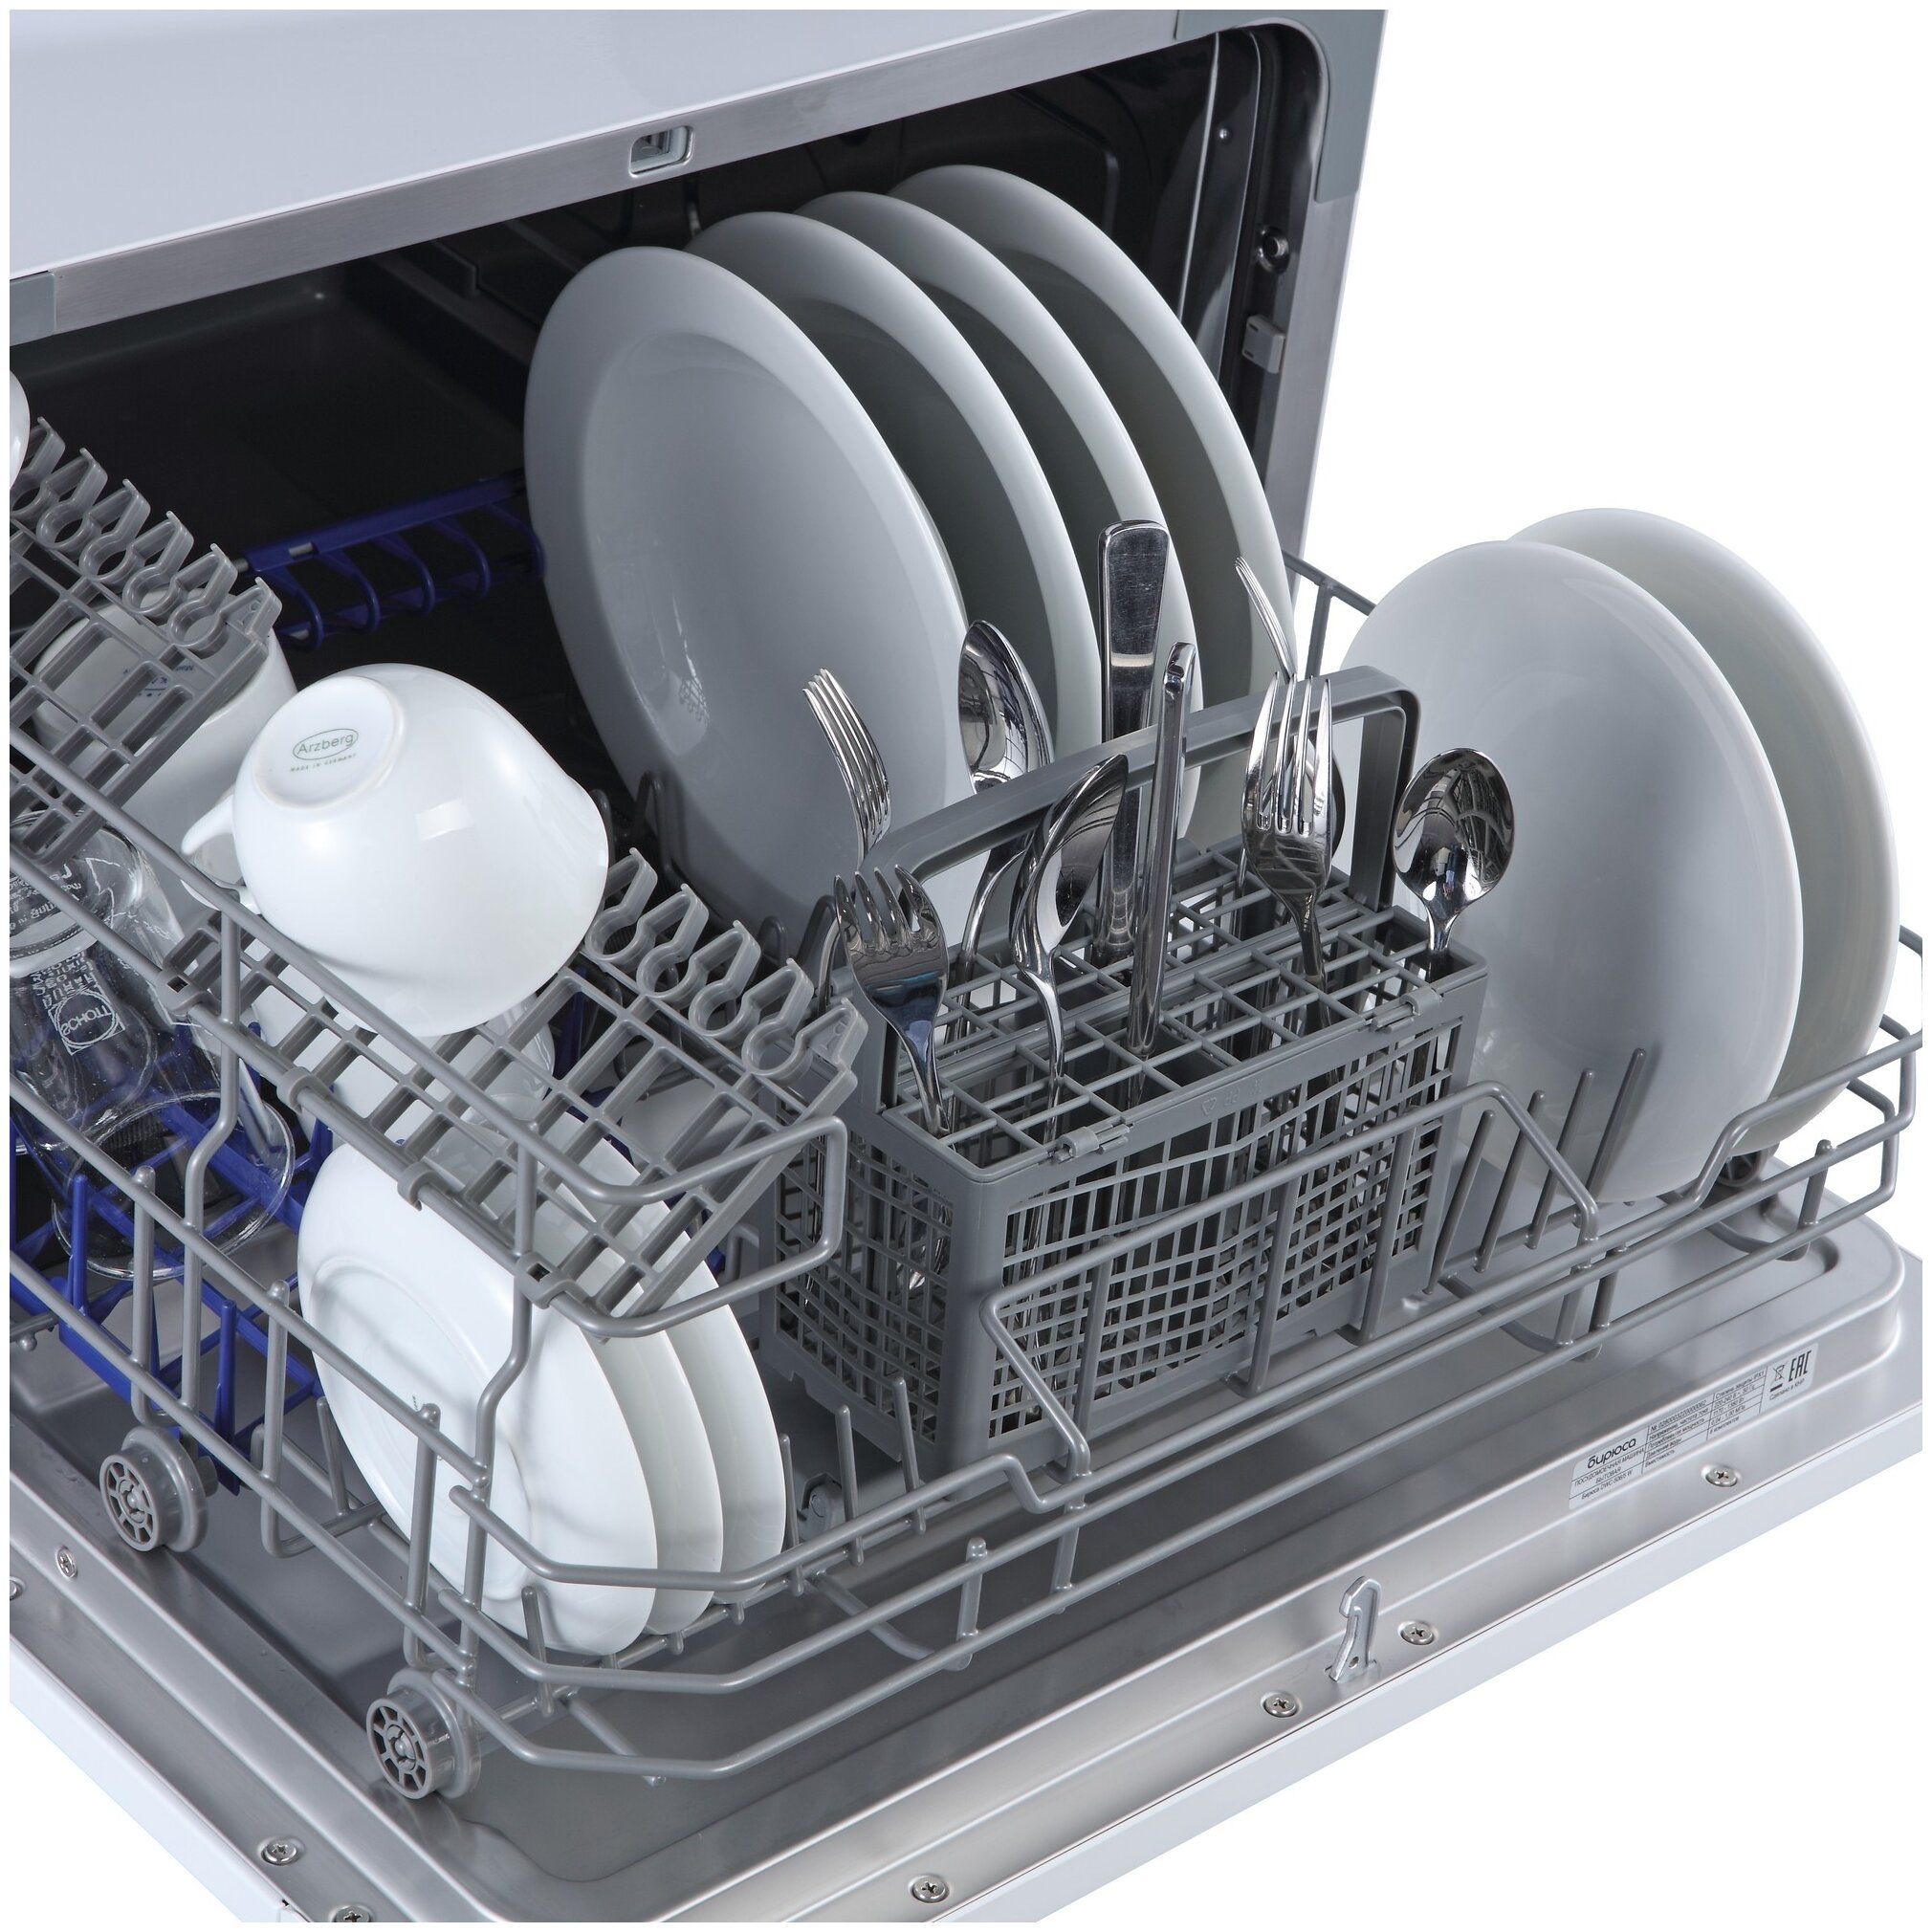 Купить посудомоечную машину отзывы